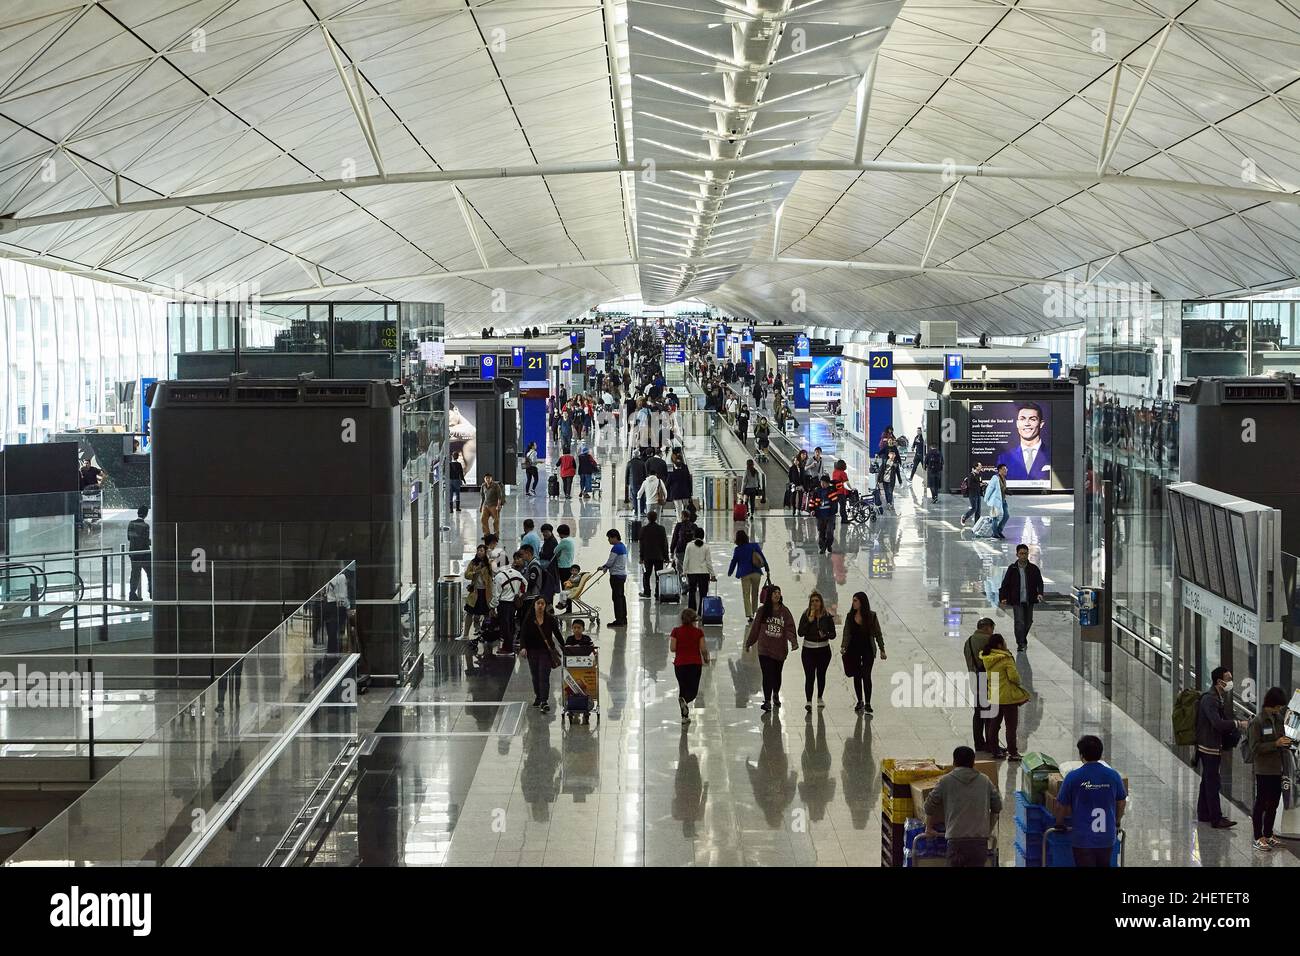 L'aéroport international de Hong Kong est l'un des plus grands centres de transbordement, hub passagers et porte d'entrée pour des destinations en Chine et en Asie. Banque D'Images